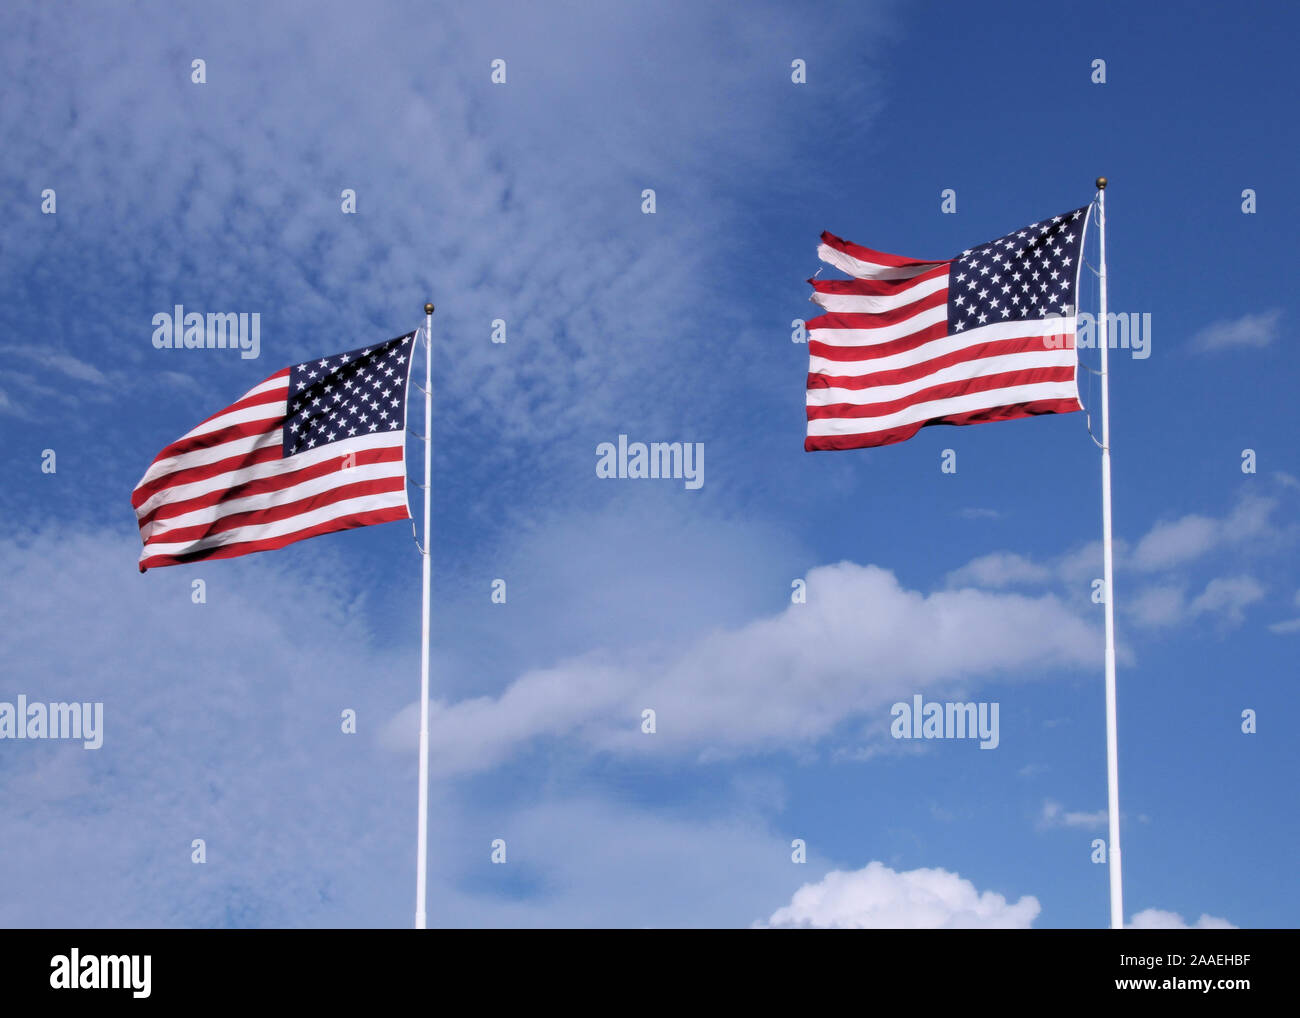 Zwei amerikanische Fahnen wehen im Wind gegen einen blauen Himmel mit dünnen Wolken. Stockfoto